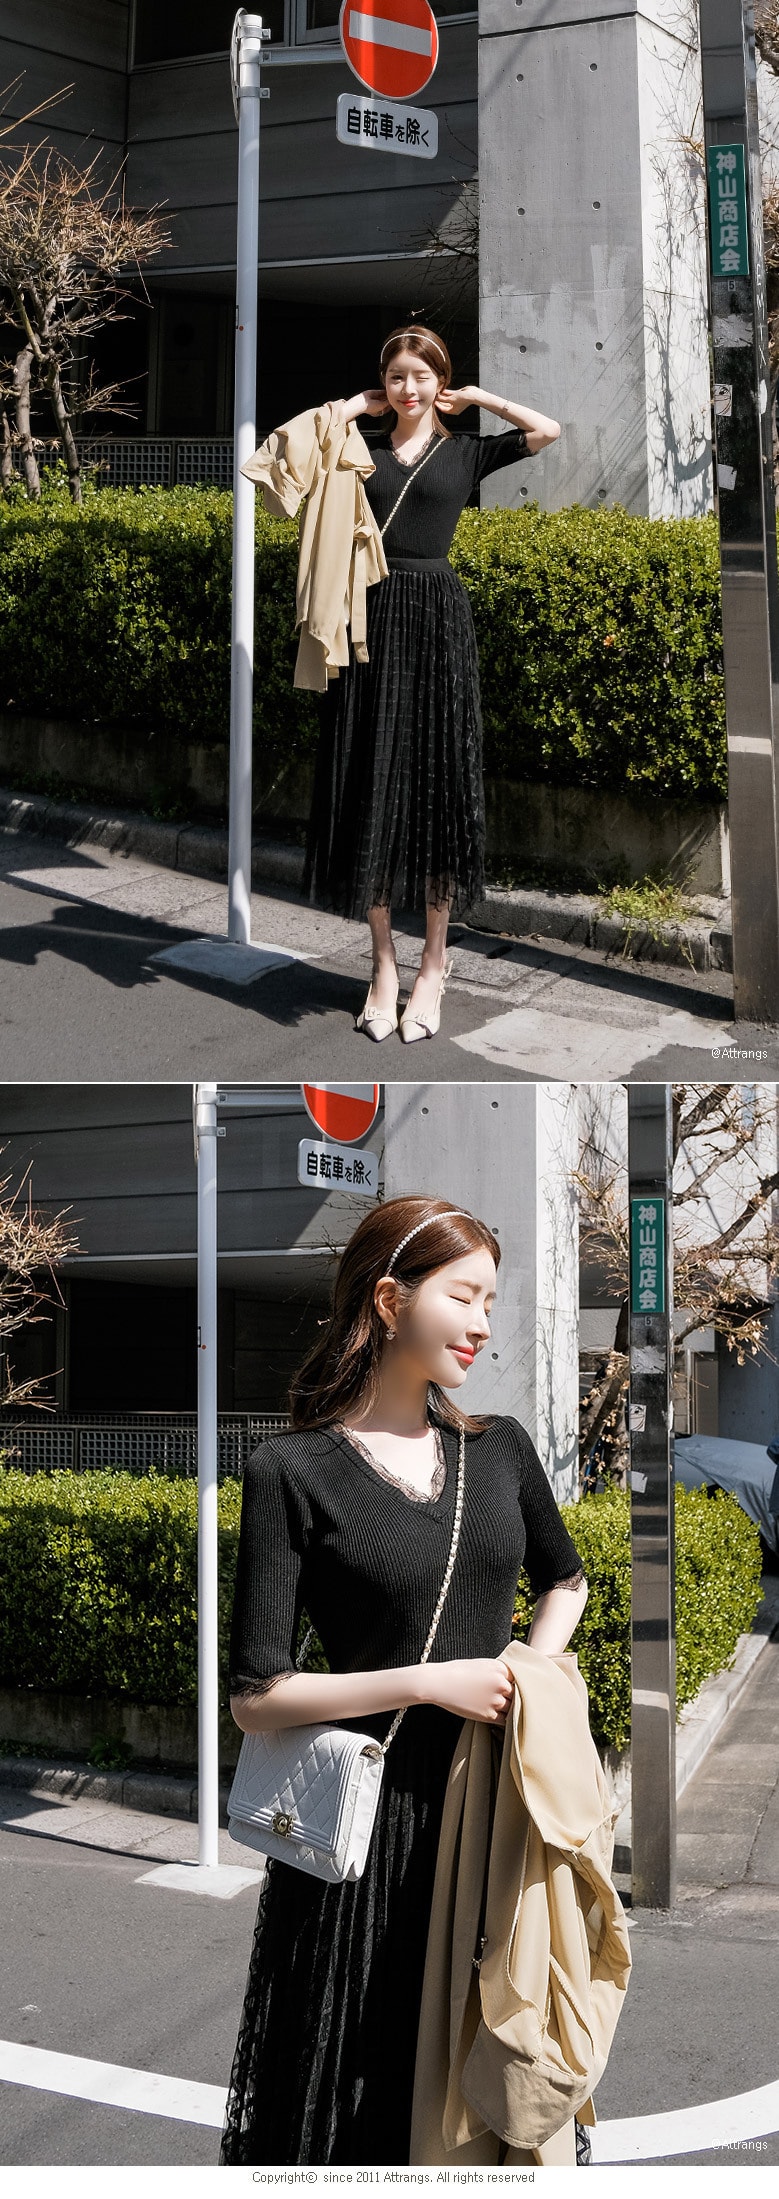 【韩国直邮】ATTRANGS 蕾丝领修身五分袖针织上衣+半身长裙套装 黑色 均码